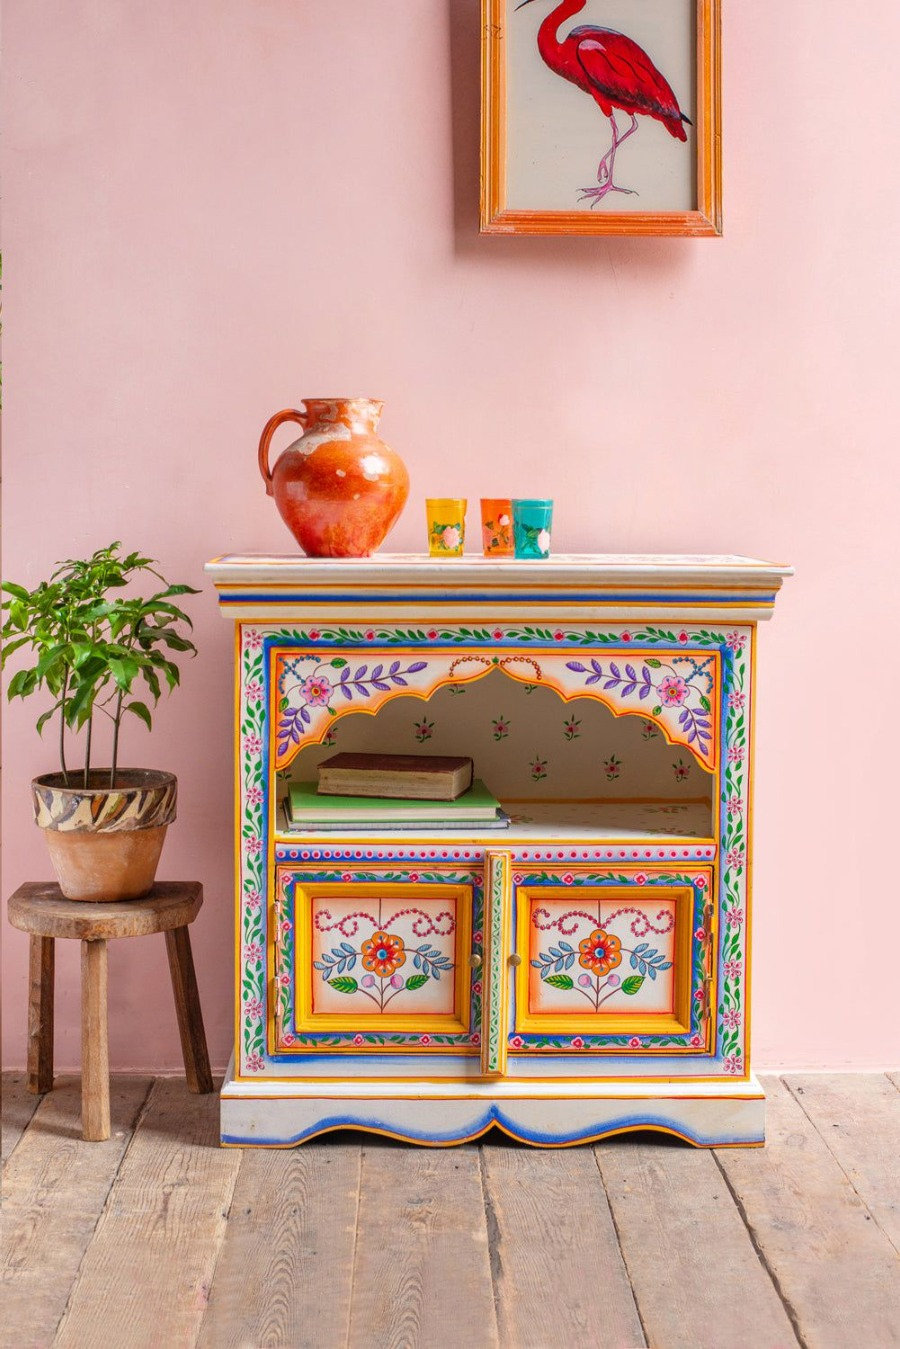 Mueble vintage blanco pintado con motivos de flores y distintos patrones. Sobre el mueble hay un jarrón naranjo y tres vasos.